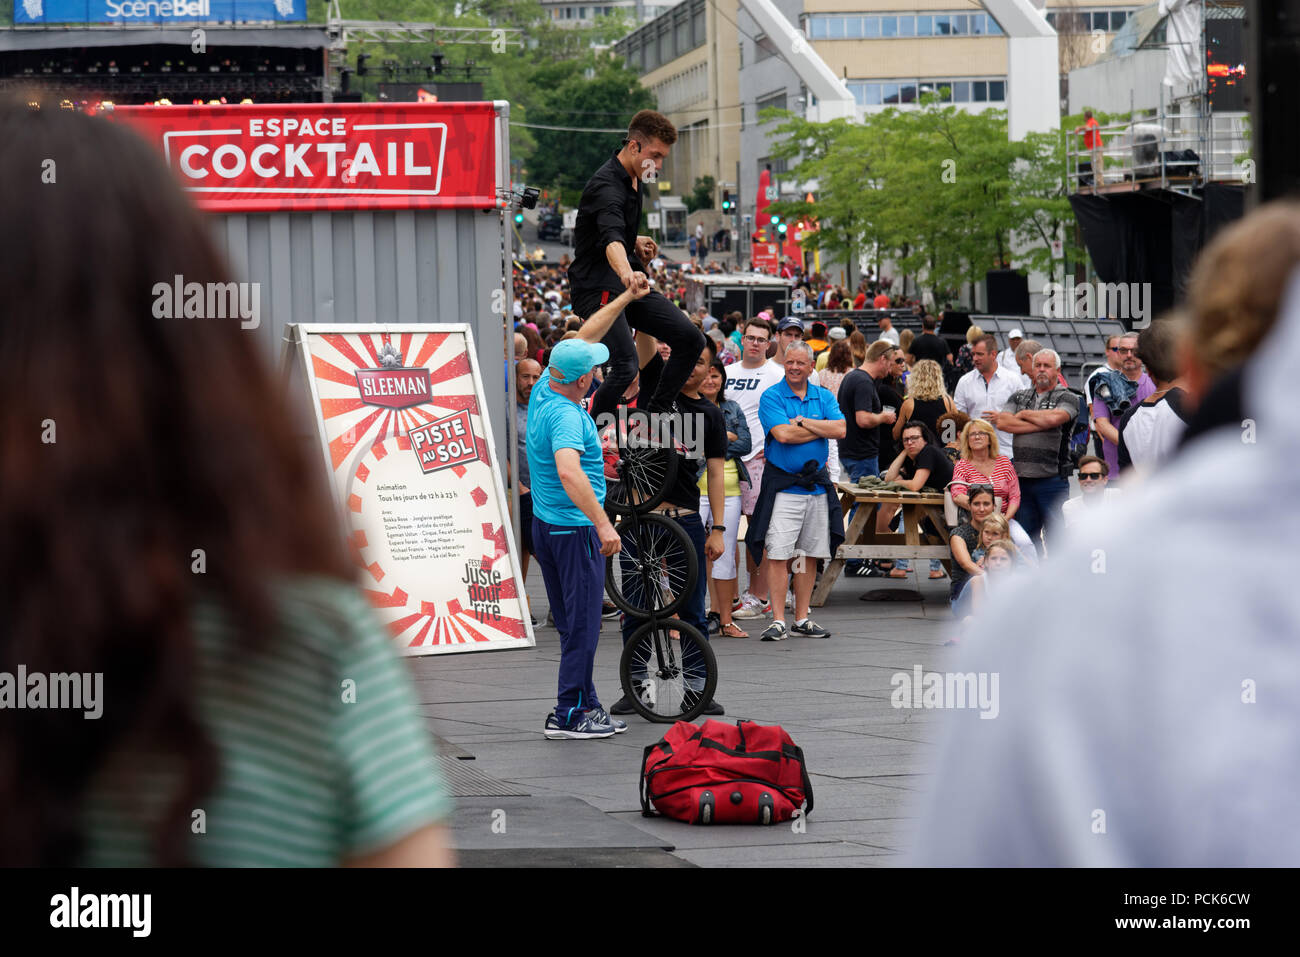 Les foules se rassemblent pour surveiller un monocycle à trois roues au festival Juste pour rire à Montréal Banque D'Images